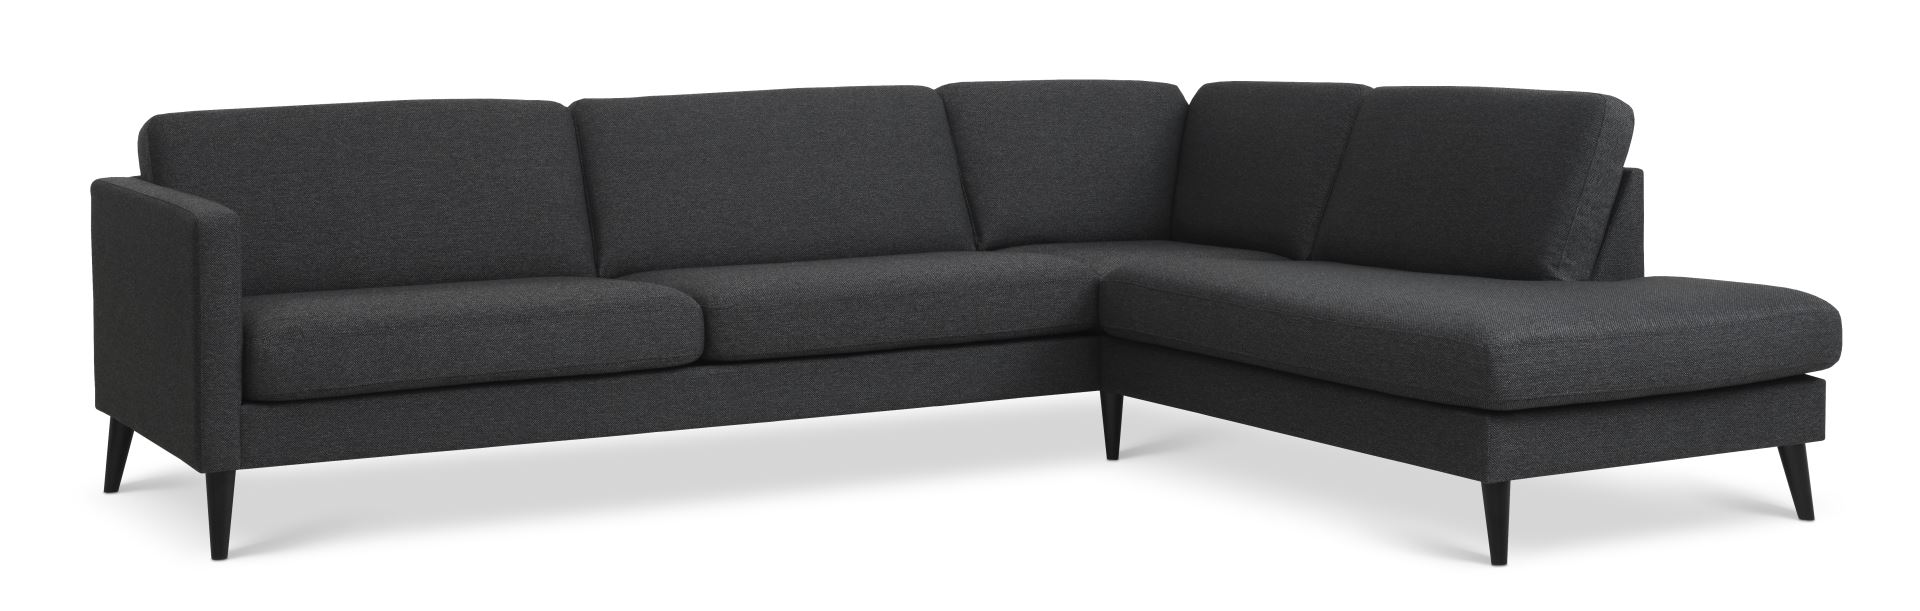 Ask sæt 61 stor OE sofa, m. højre chaiselong - antracitgrå polyester stof og sort træ